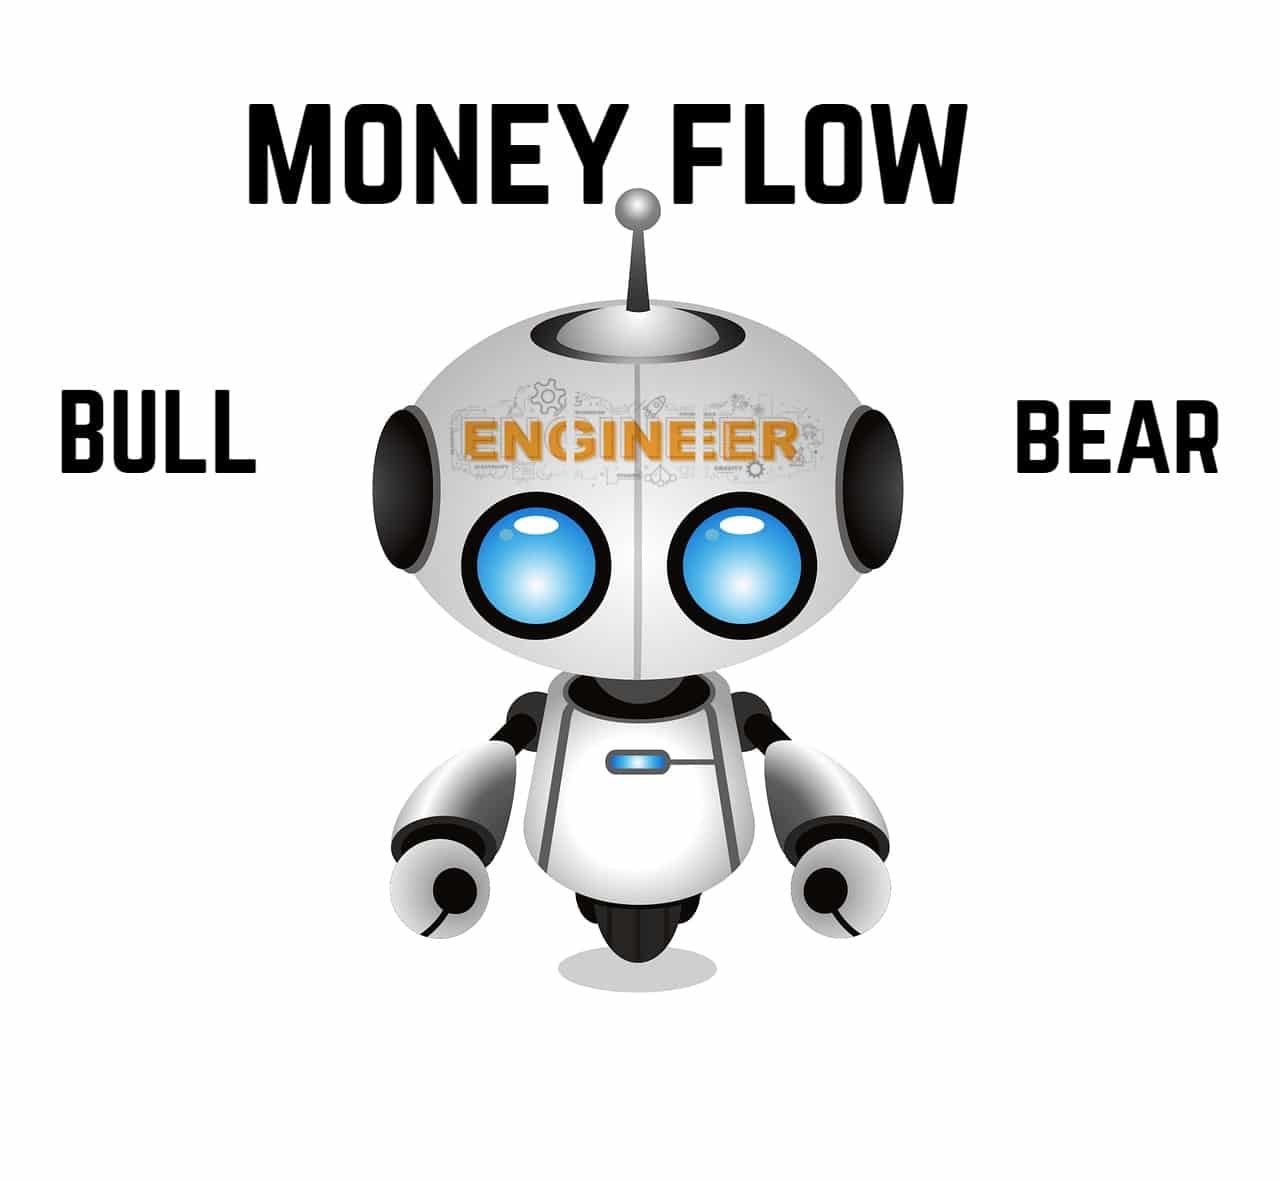 Robo money flow bull bear